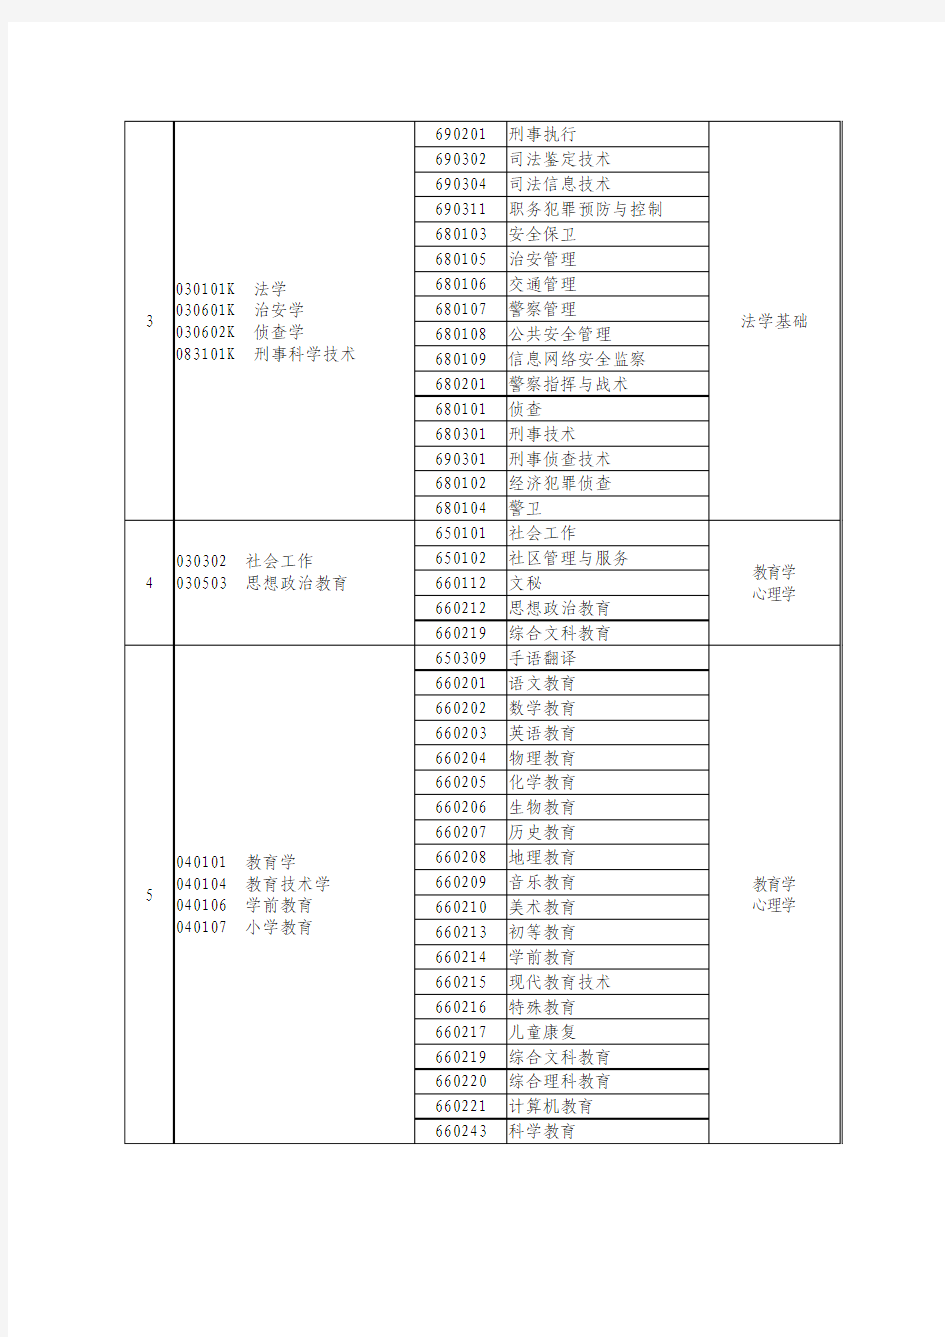 2015年河南专升本本专科专业对照及考试课程一览表